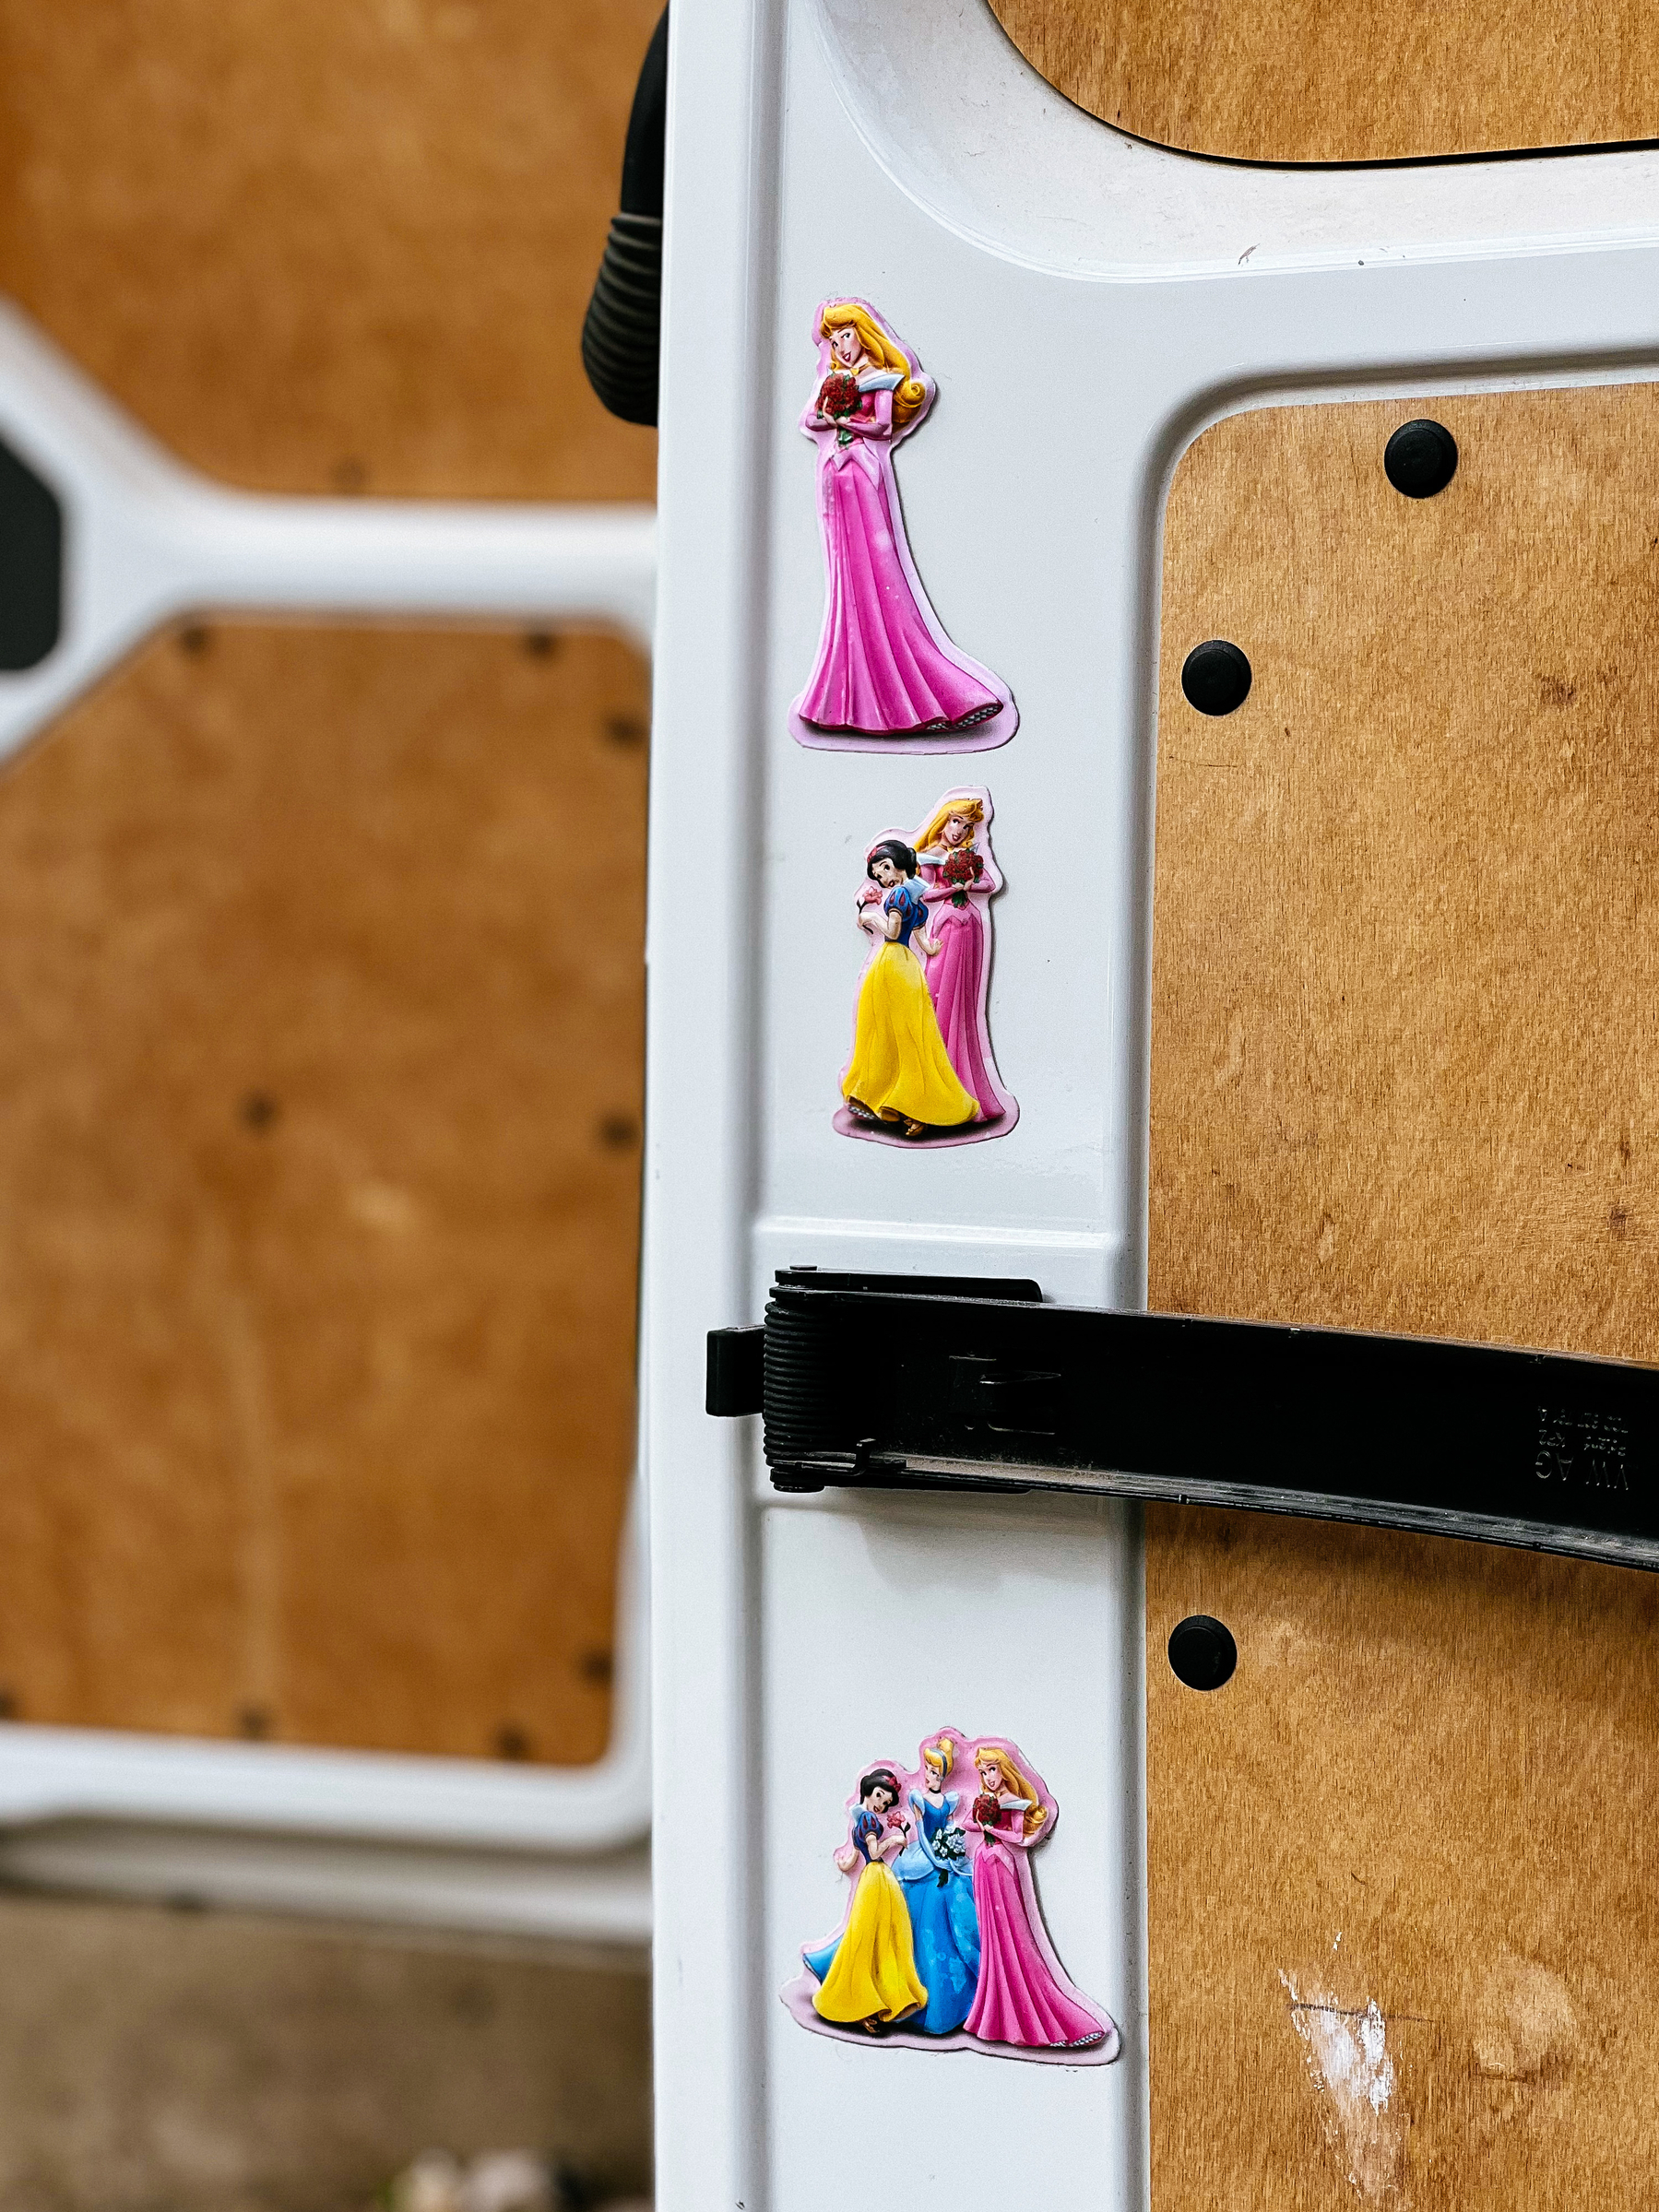 Disney princesses stuck to a van’s door. 